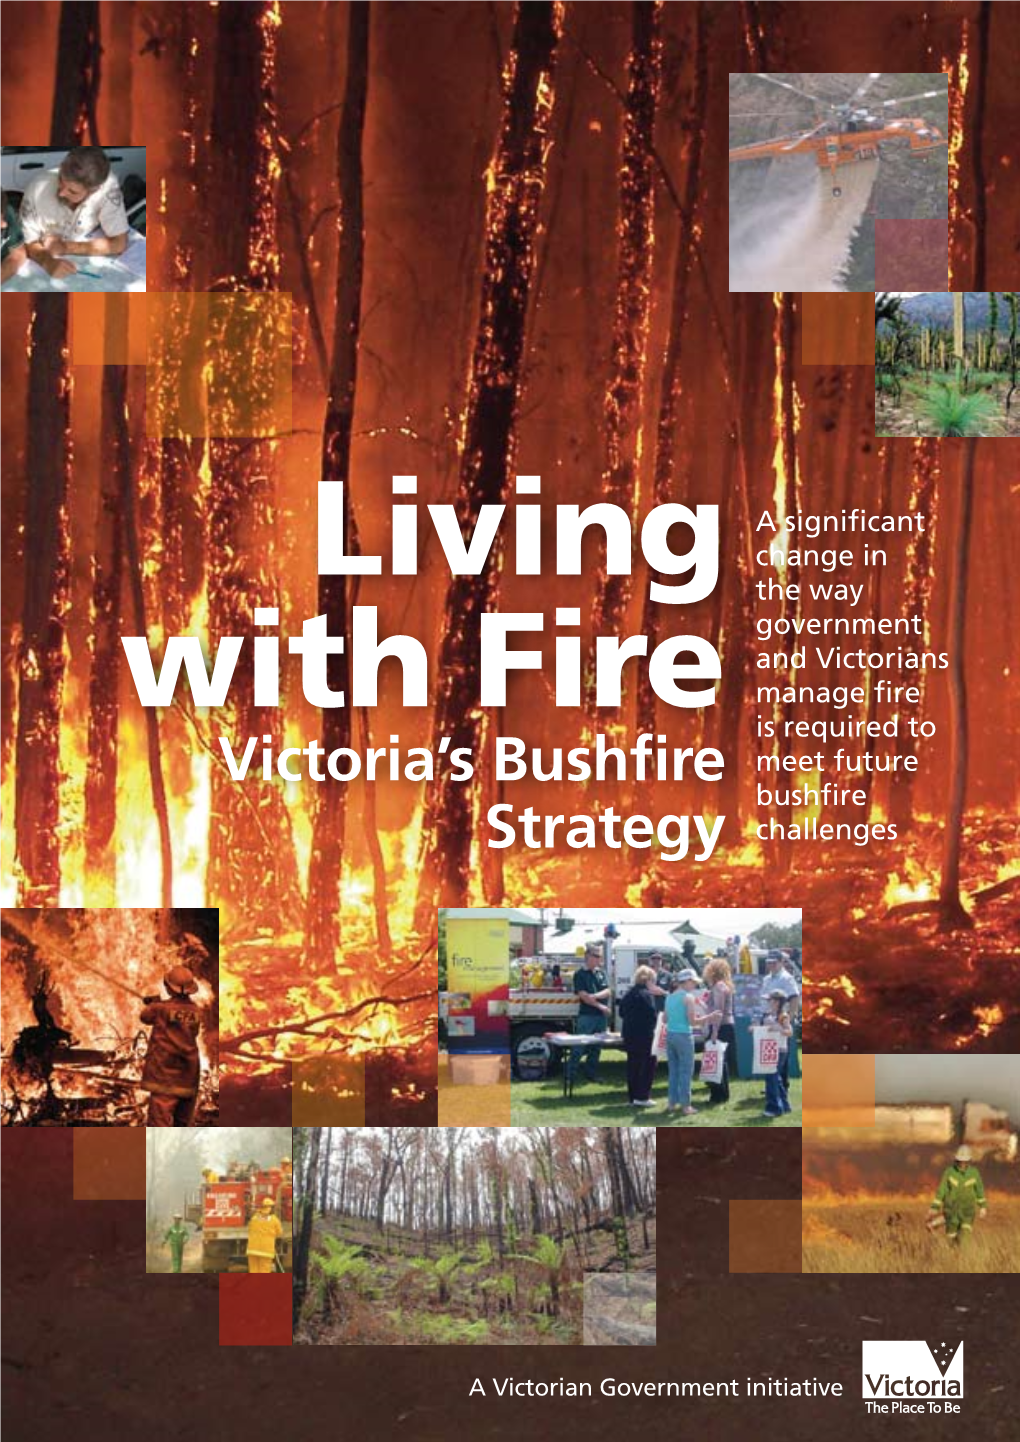 Victoria's Bushfire Strategy